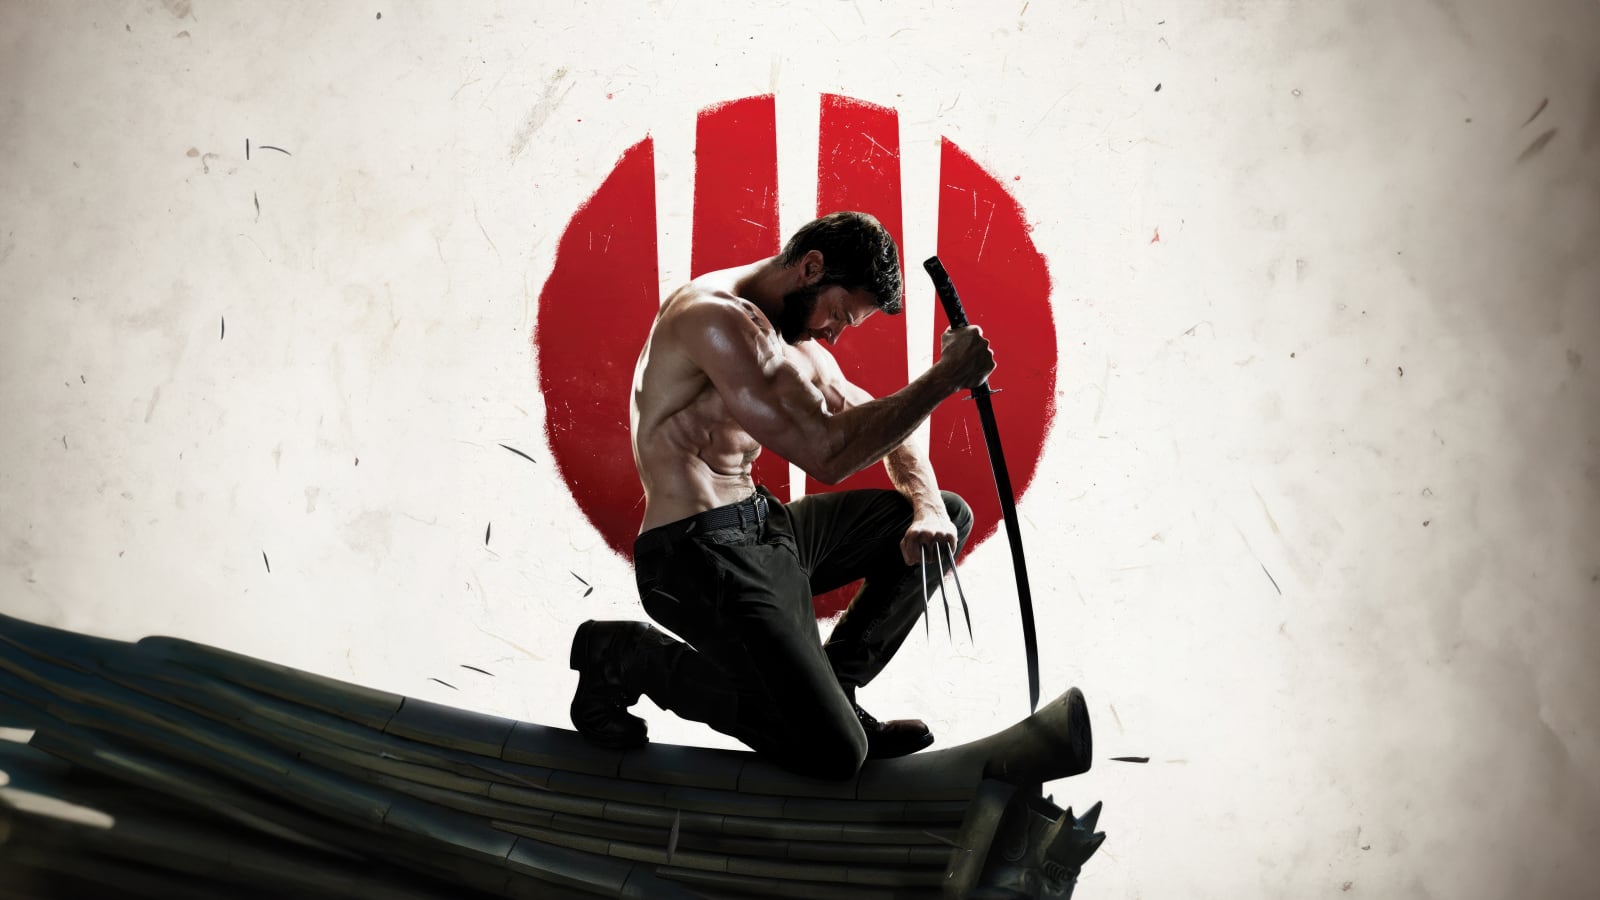 Un tributo cosplay convierte a Wolverine en un samurái brutal y salvaje como jamás lo habíamos visto antes.